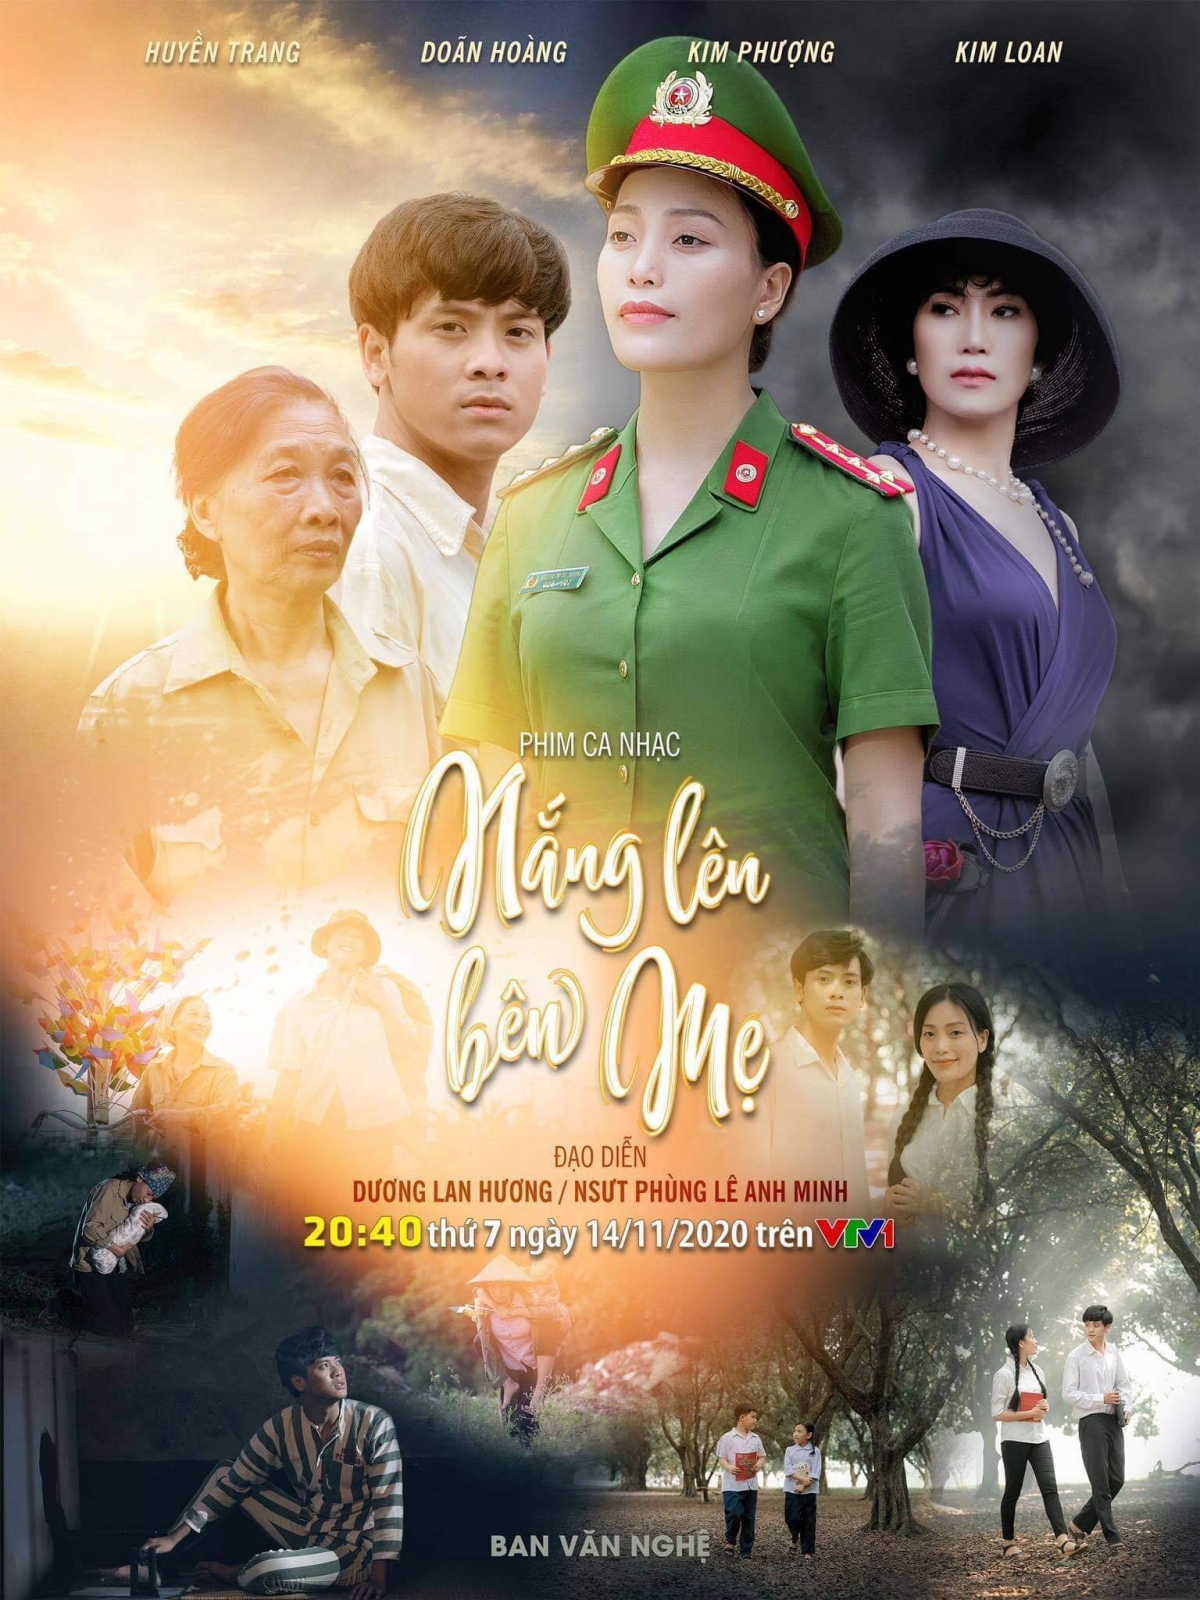 Sao Mai Huyền Trang “hoá” thành cảnh sát hình sự trong phim ca nhạc "Nắng lên bên mẹ"